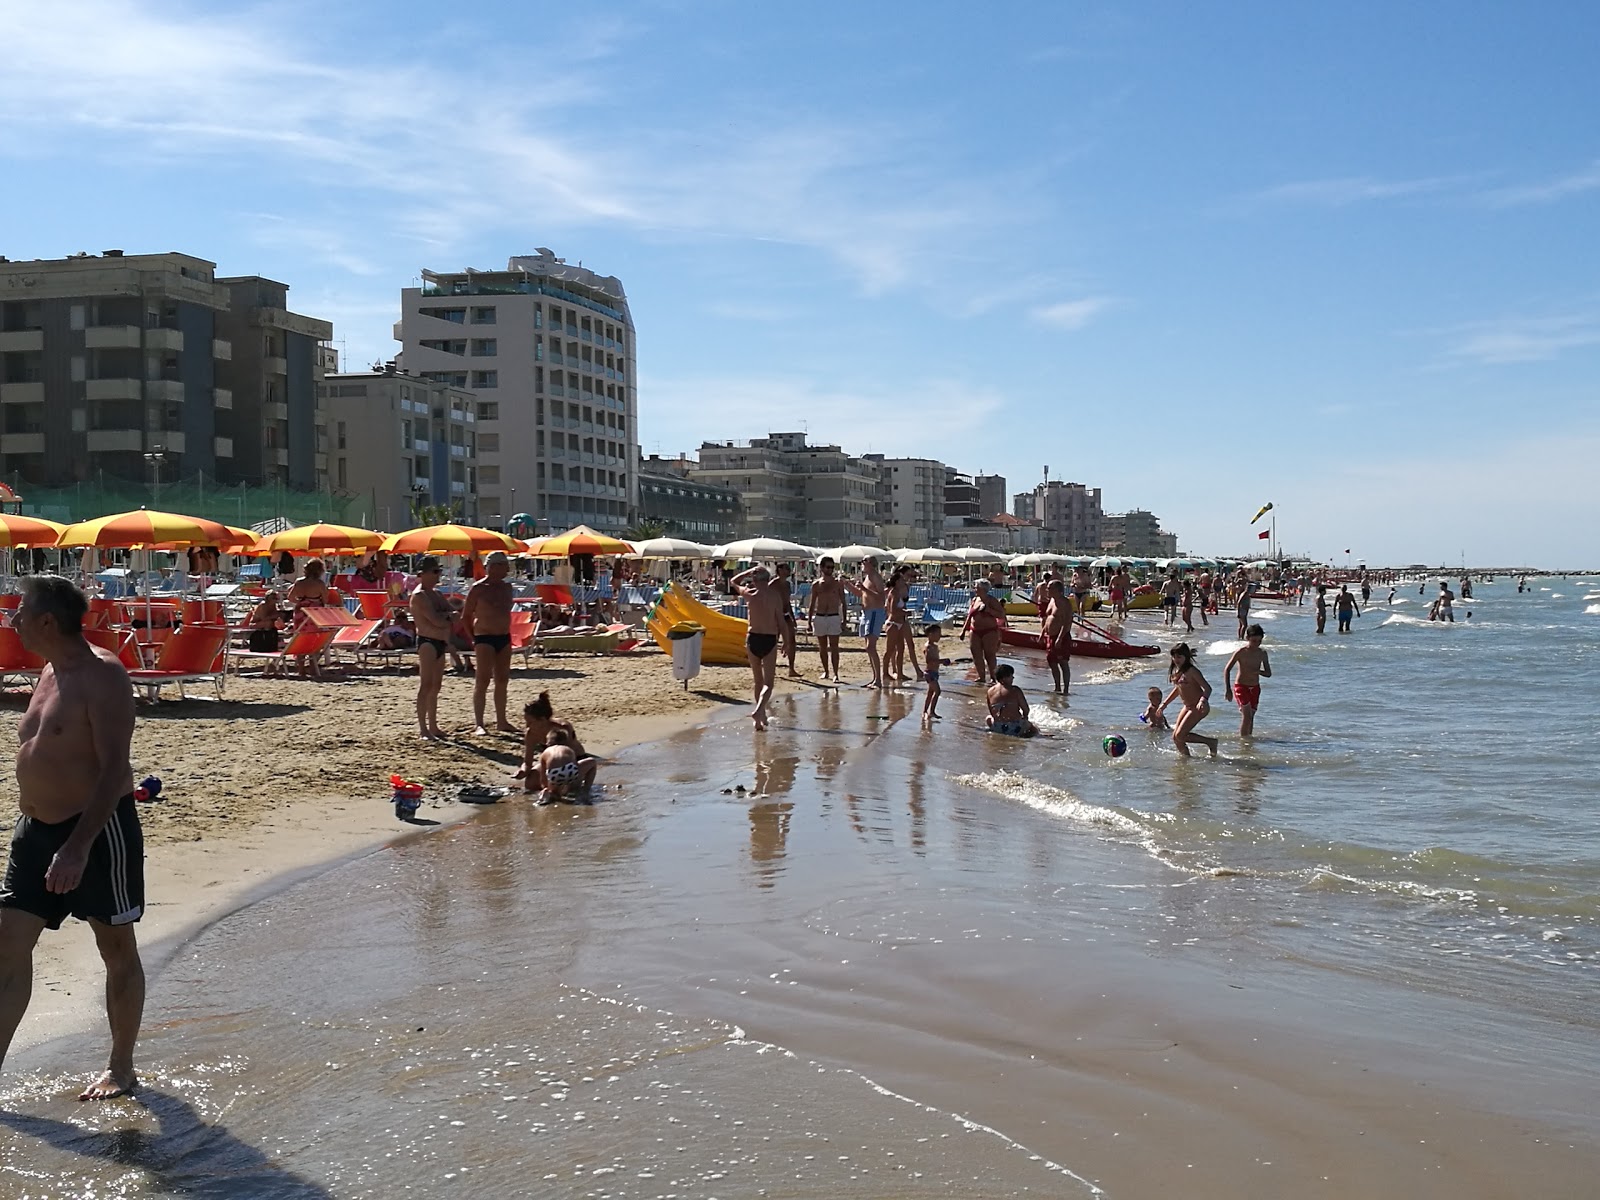 Pesaro beach II'in fotoğrafı plaj tatil beldesi alanı